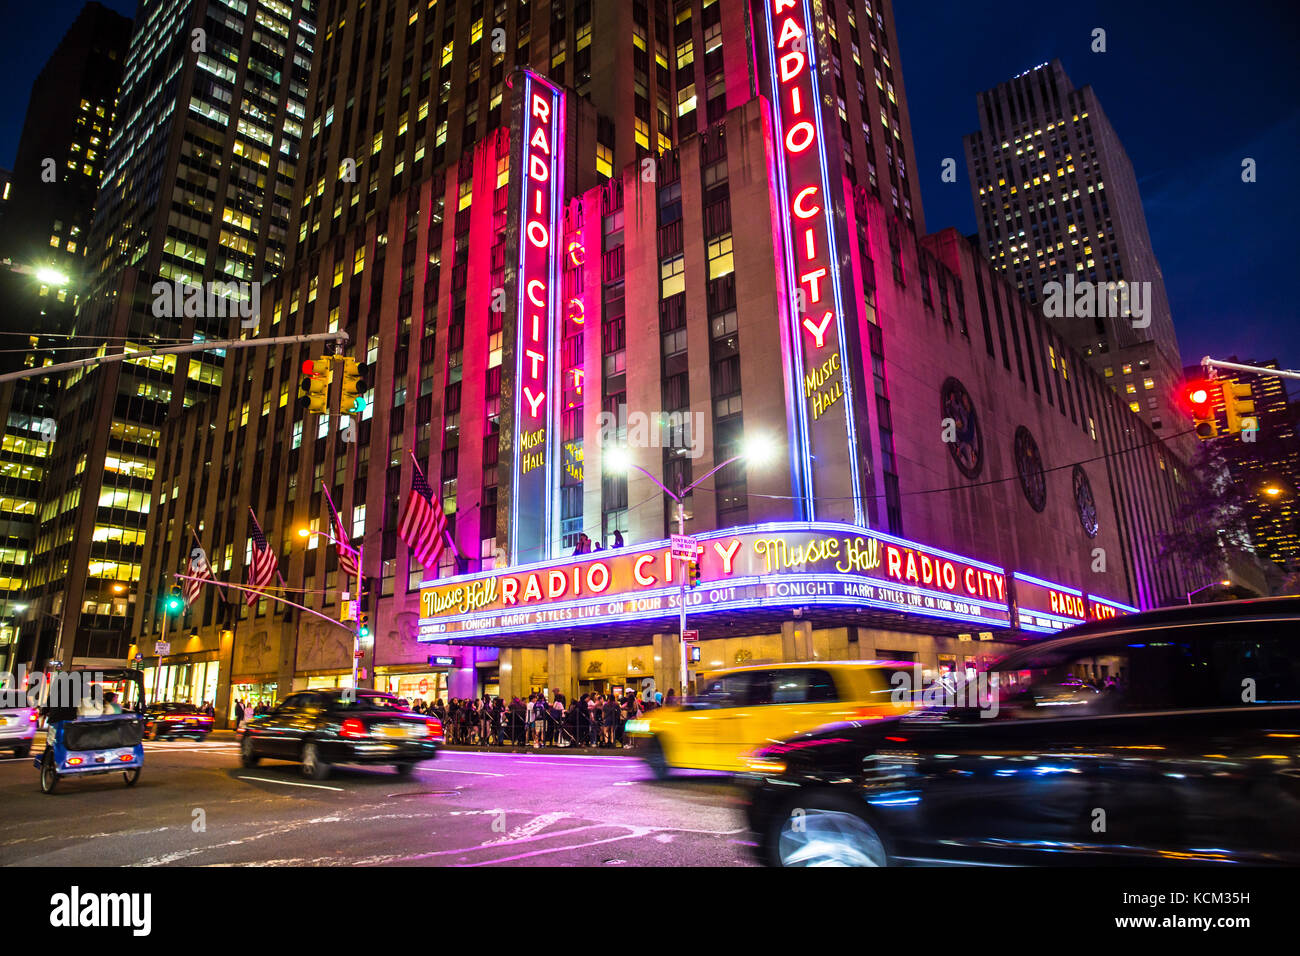 La ciudad de Nueva York, Nueva York, Estados Unidos - Septiembre 28, 2017:  Vista del Radio City Music Hall en Manhattan visto durante la noche con  luces, coches, taxis y Harry styles